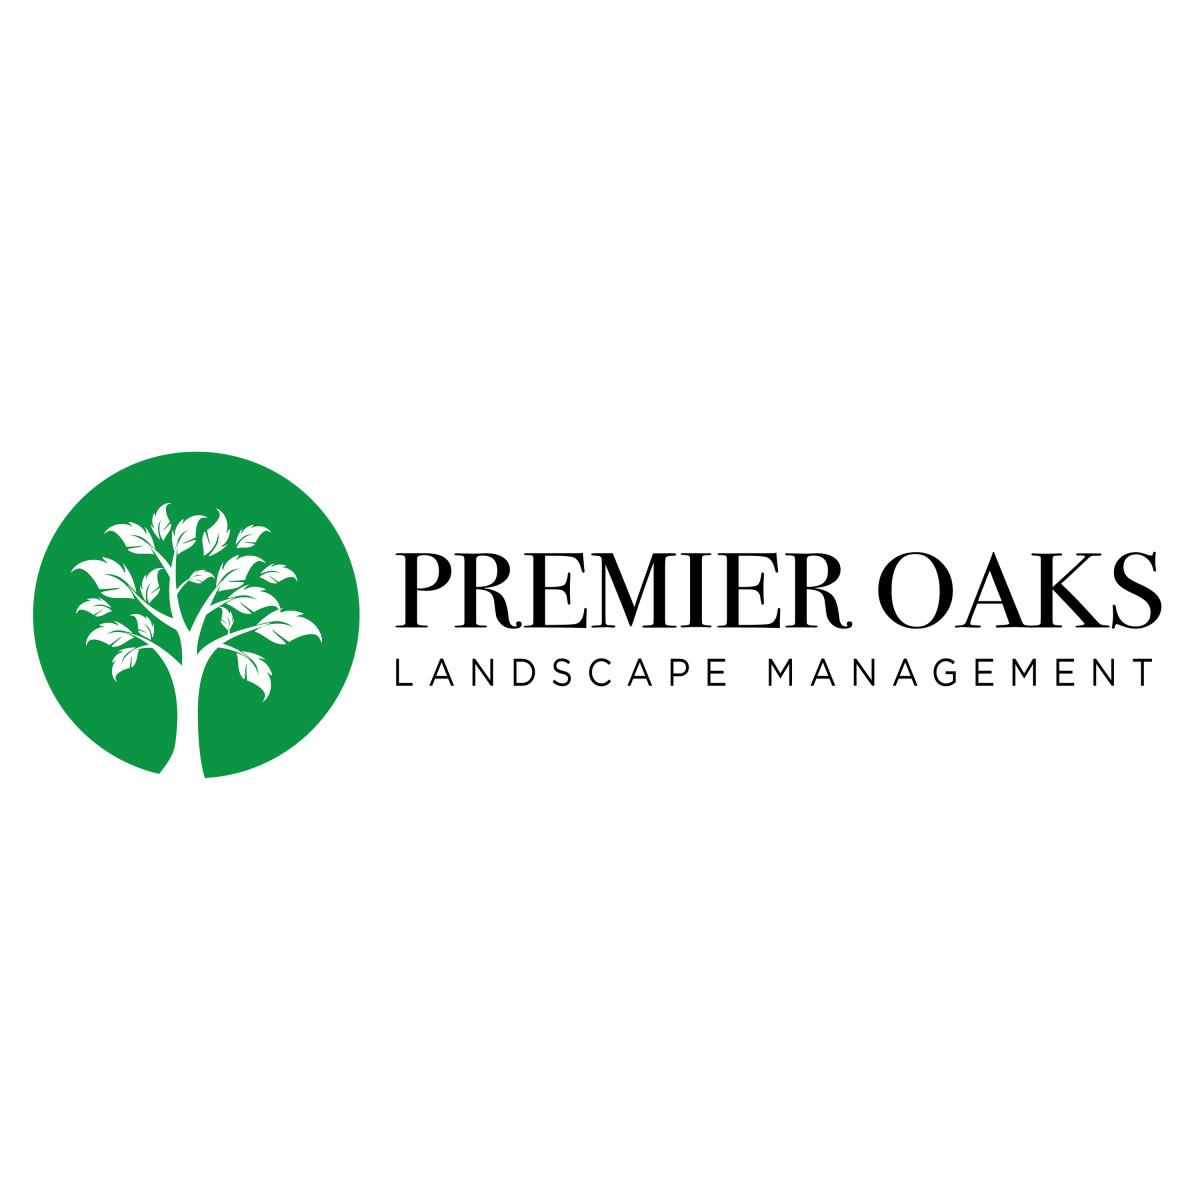 Premier Oaks Landscape Management